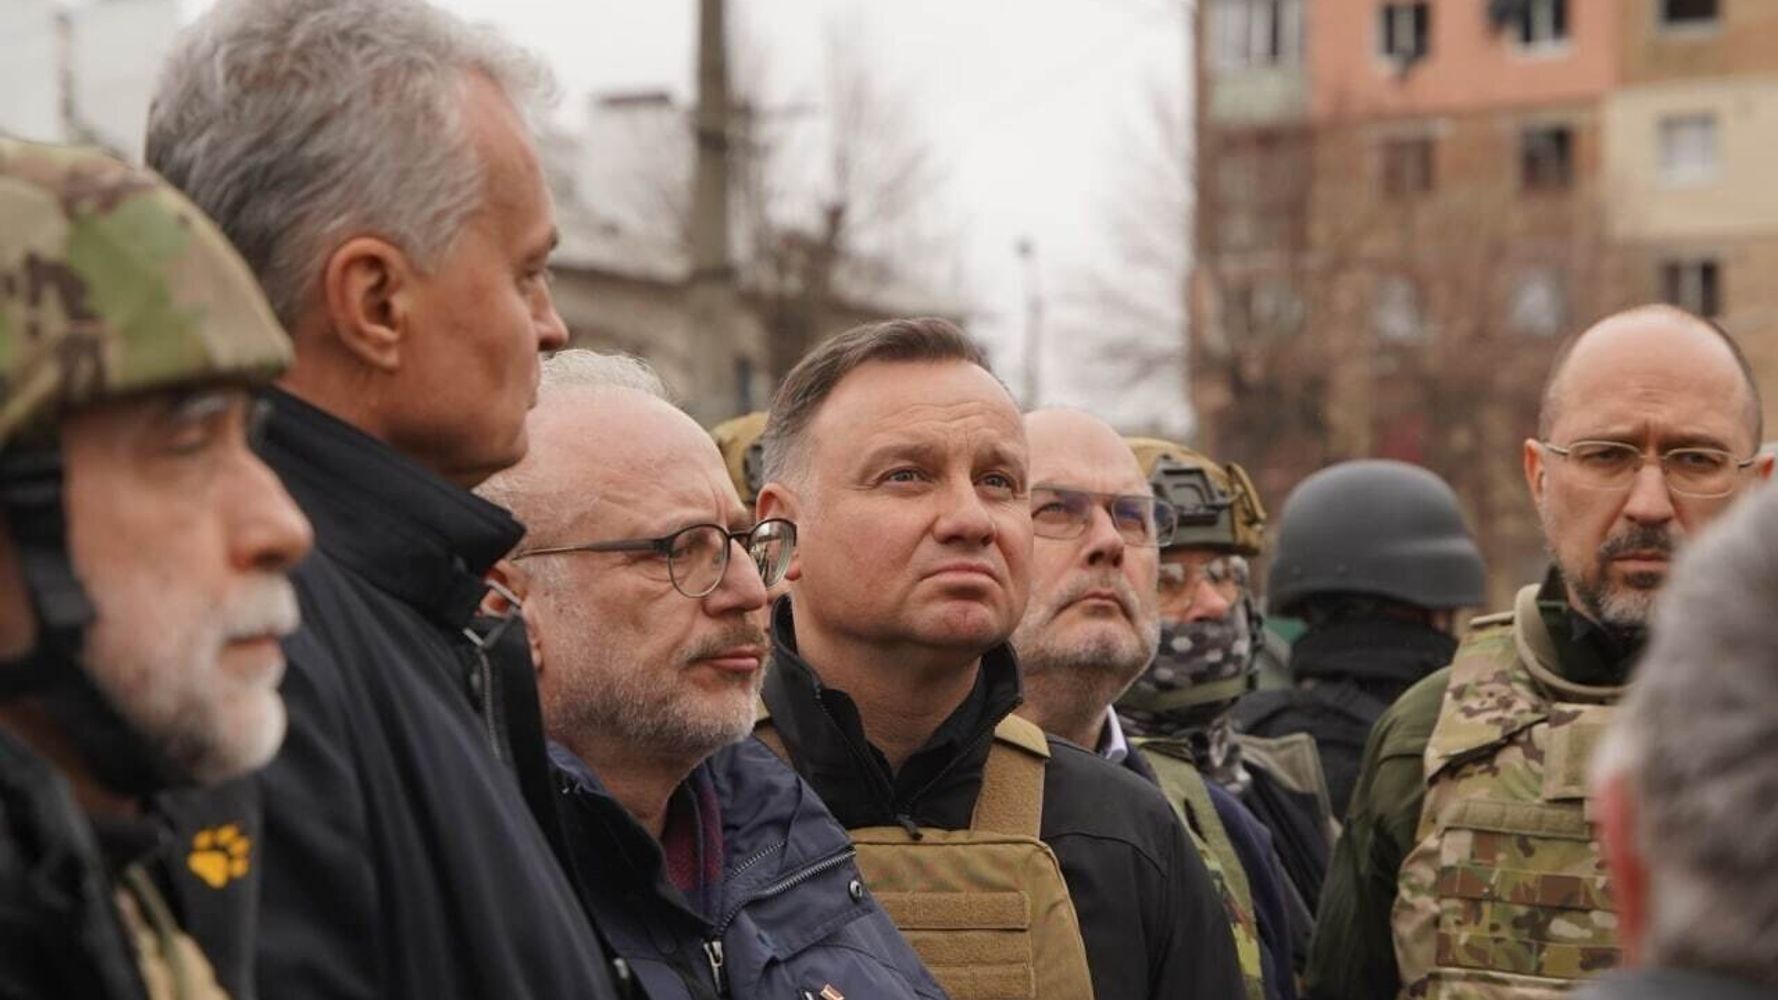 Les présidents polonais et balte visitent l’Ukraine en signe de soutien